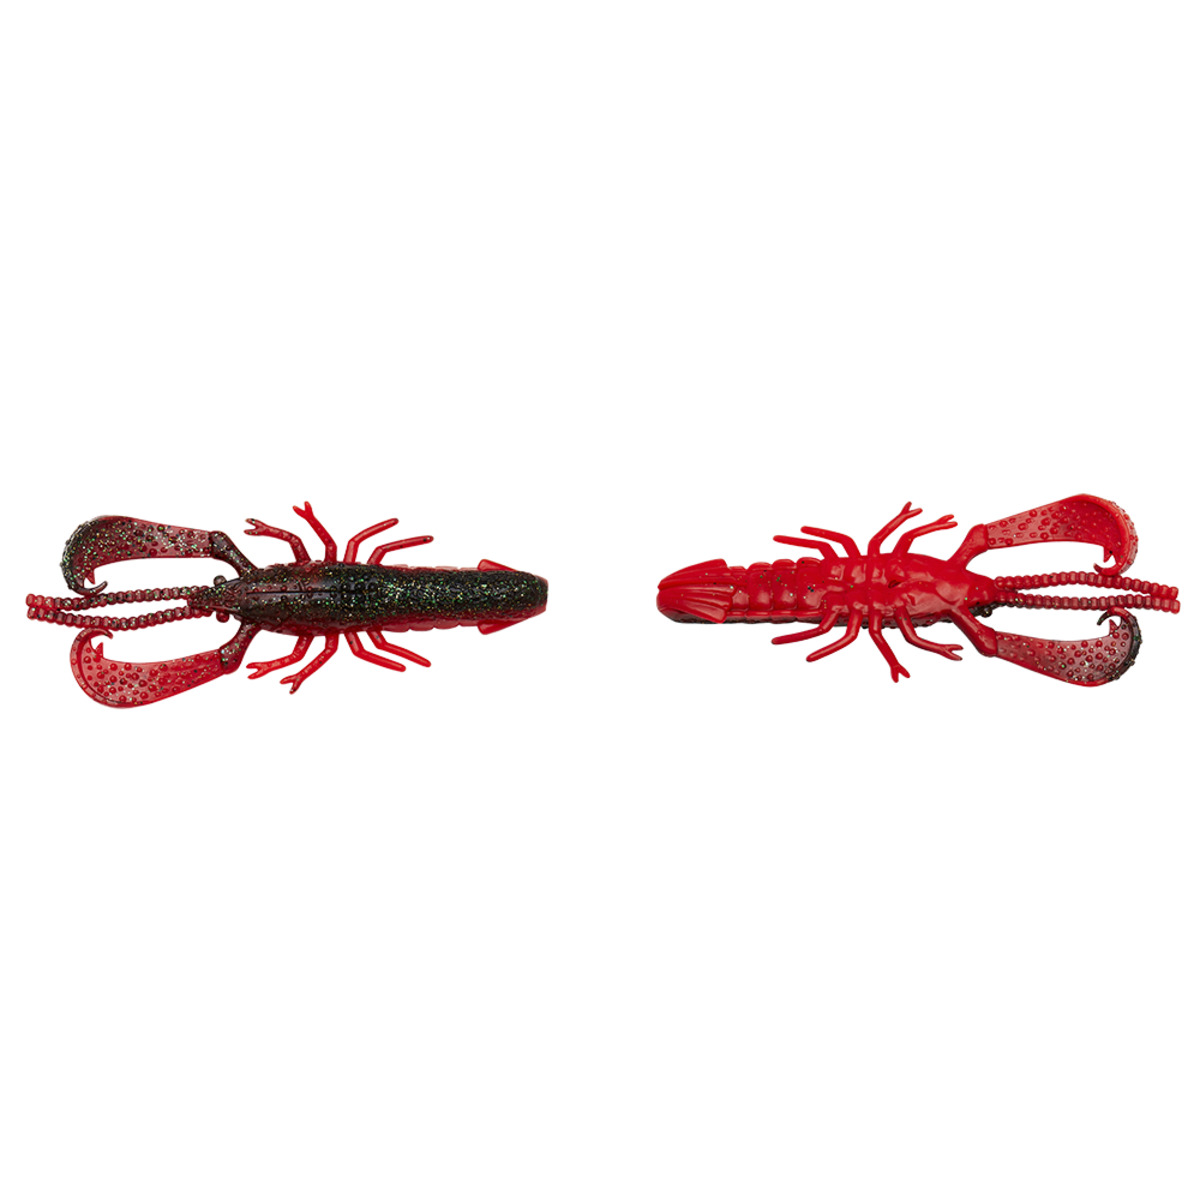 Savage Gear Reaction Crayfish 7.3cm 4g - RED N BLACK